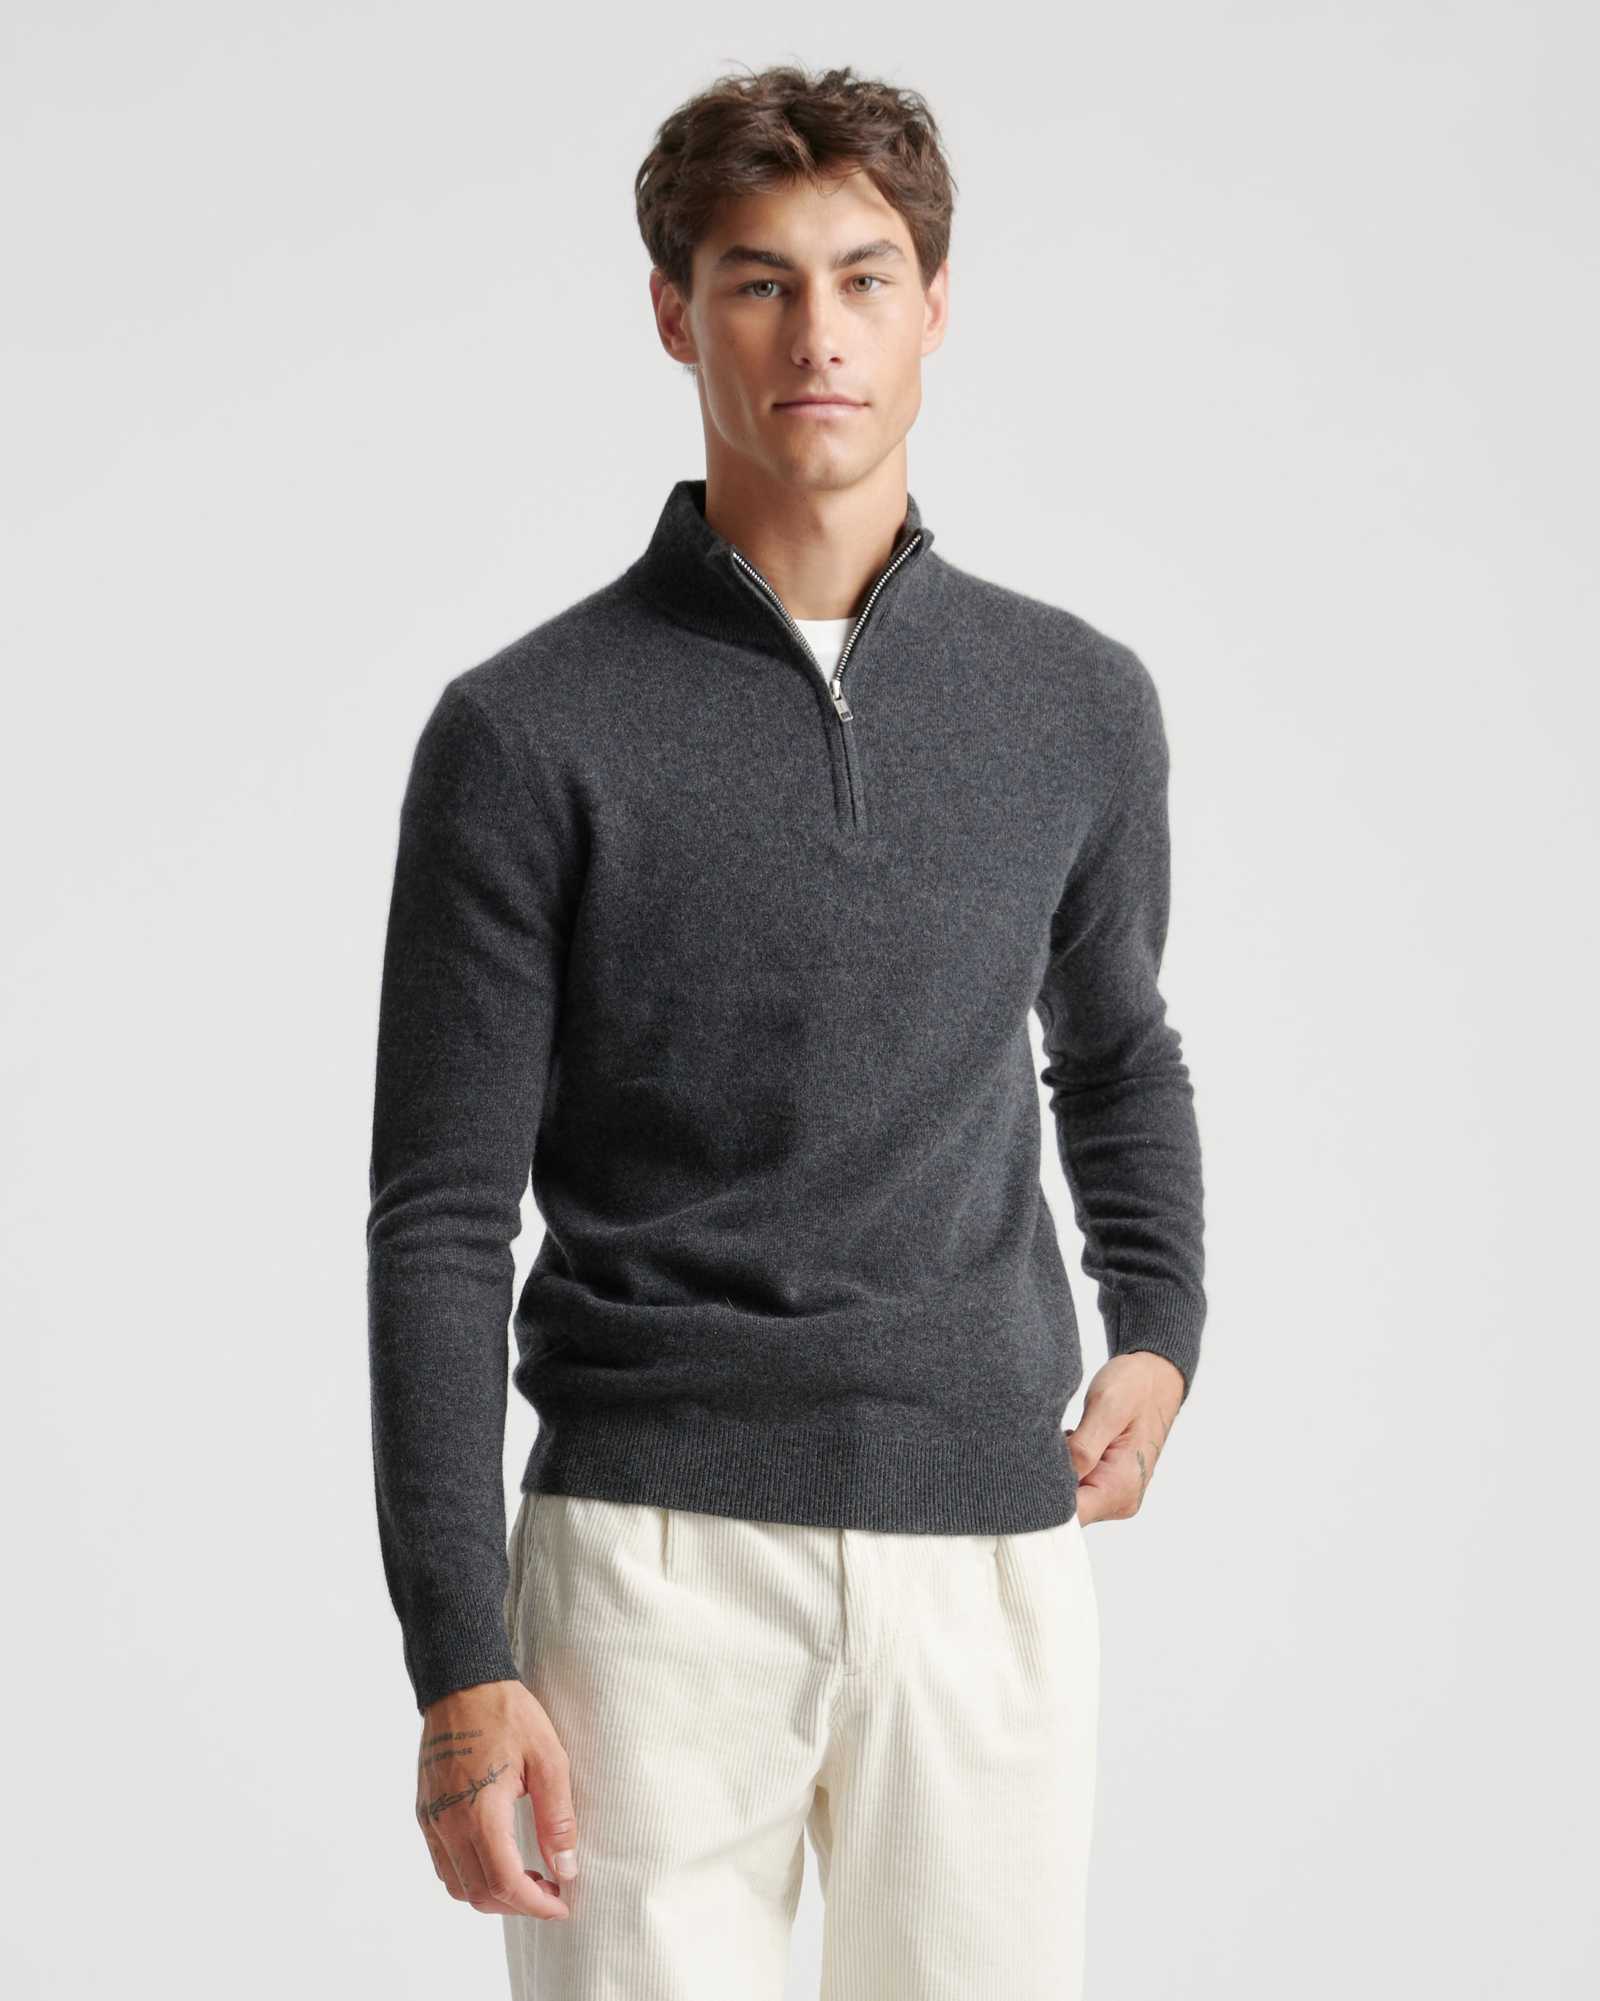 focus Machtig excuus Men's Cashmere Quarter Zip Sweater | Quince